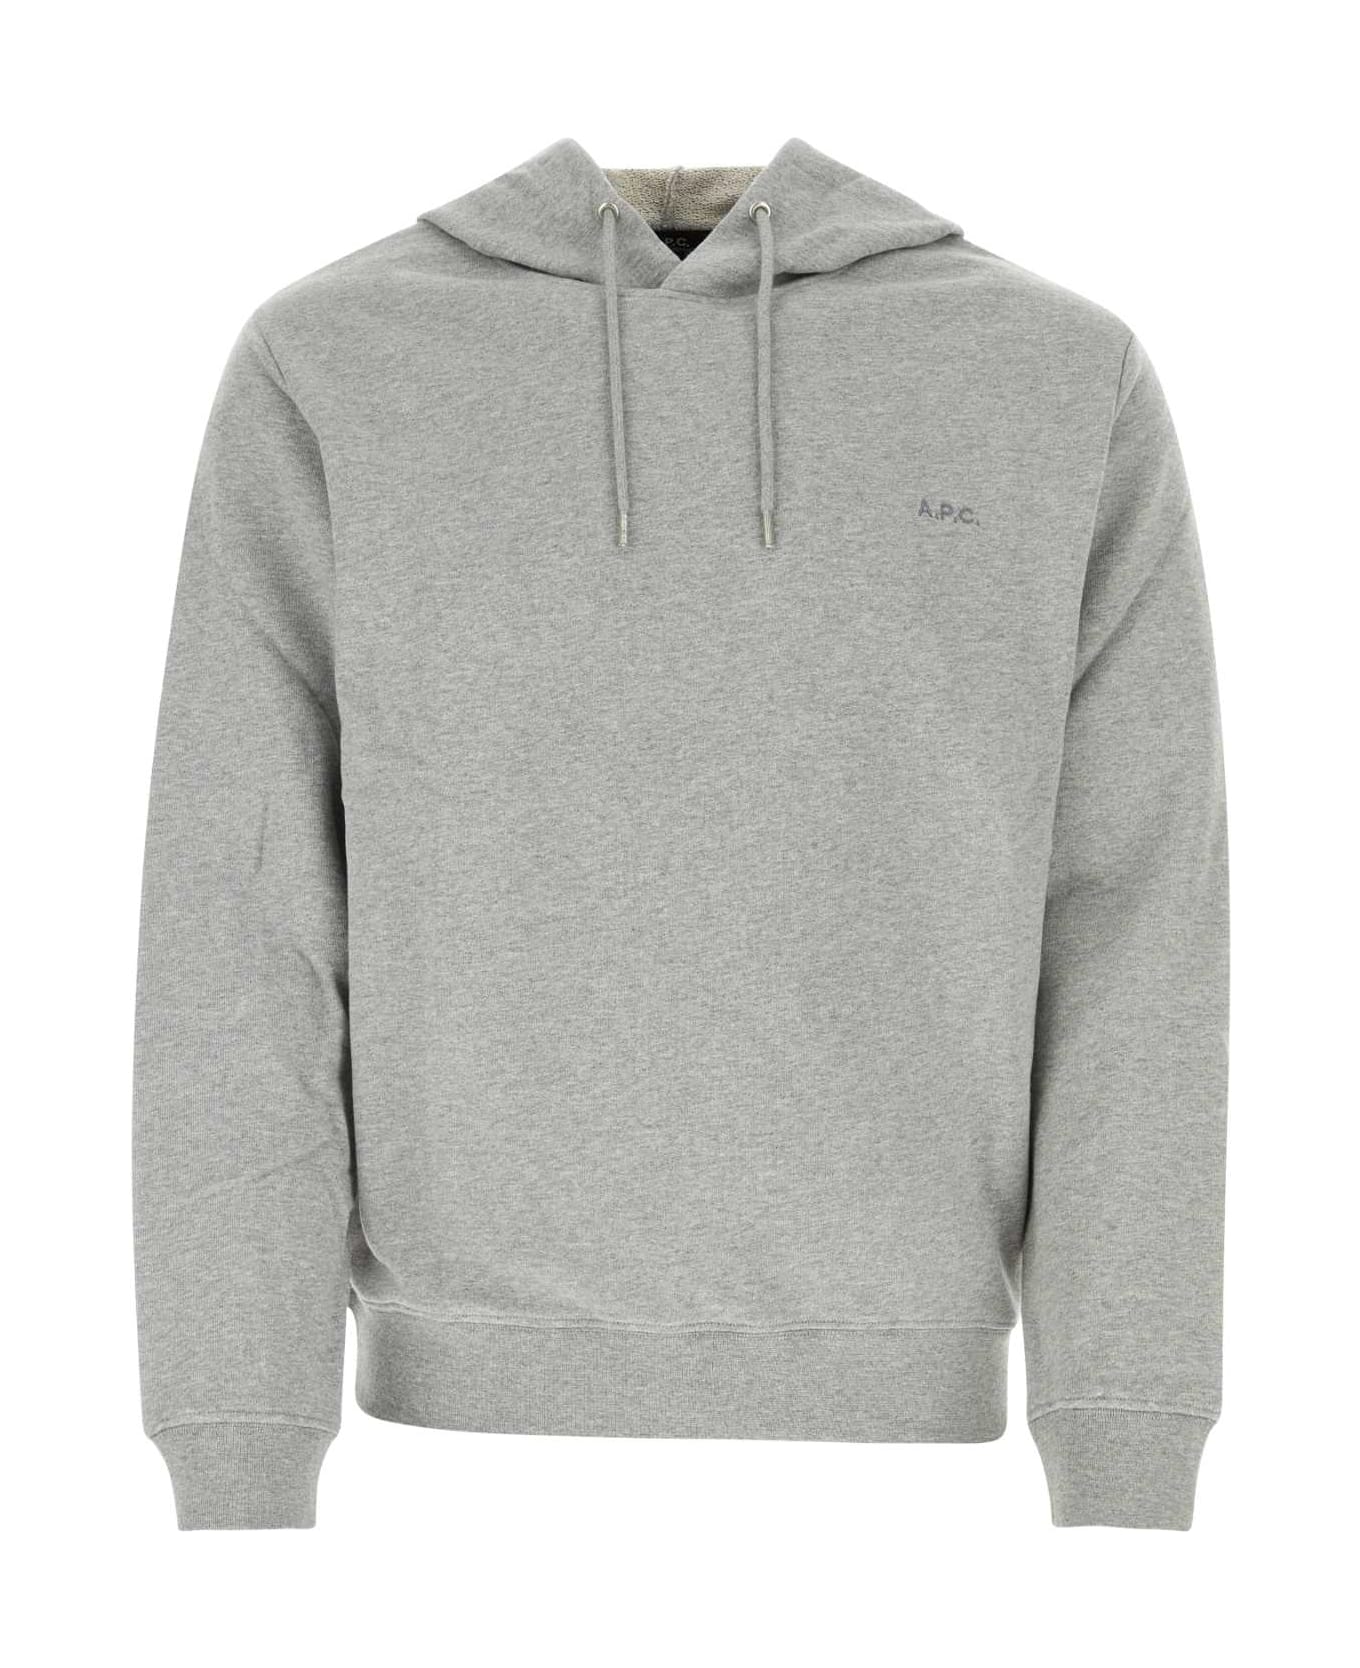 A.P.C. Grey Cotton Sweatshirt - GRISCHINE